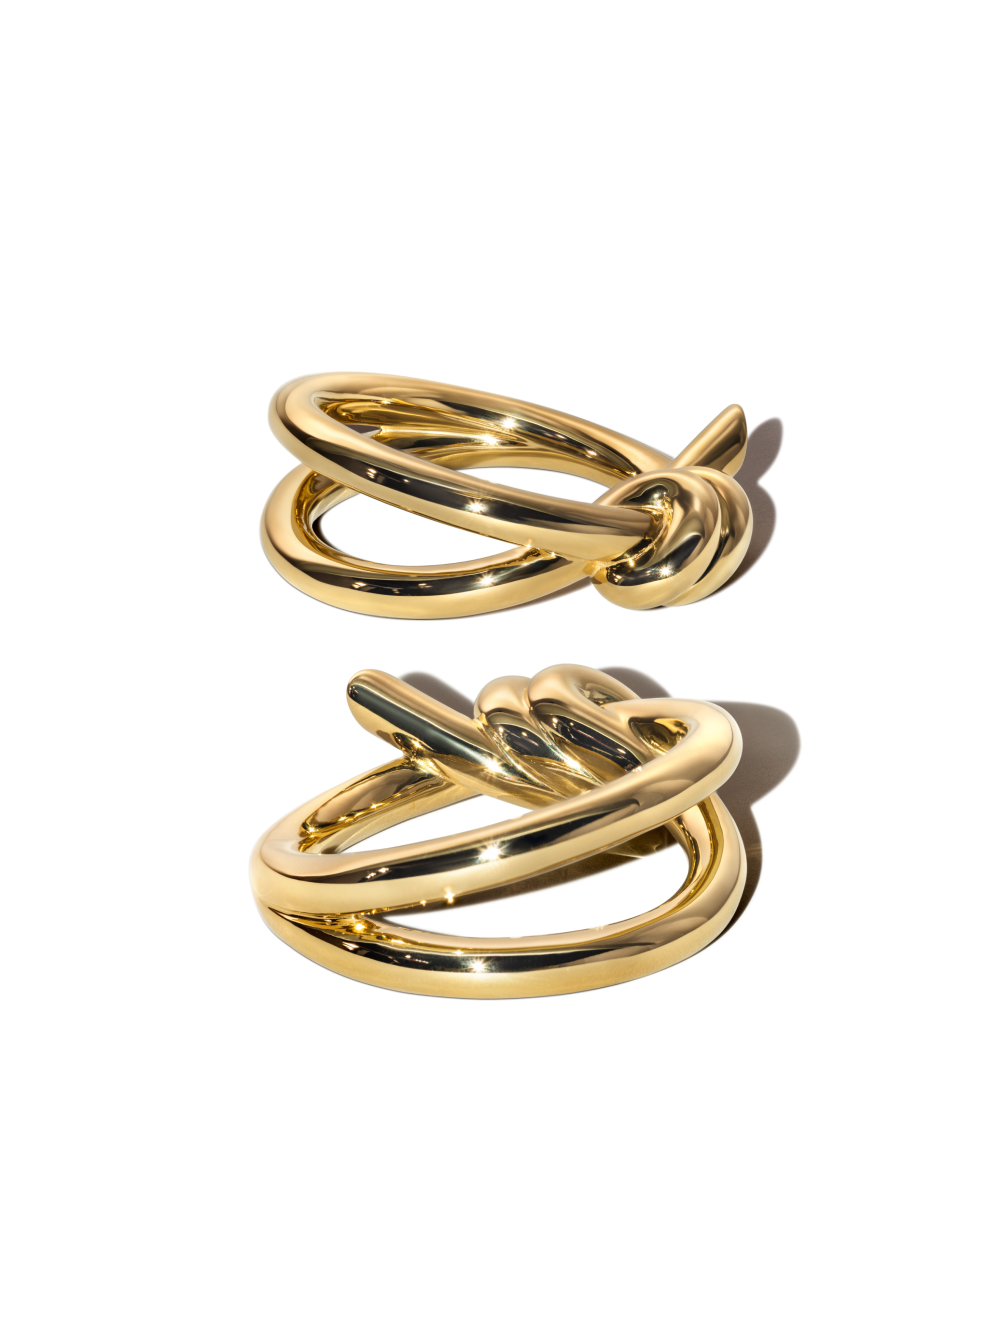 Tiffany & Co. объявил о запуске новой коллекции украшений Knot (фото 7)